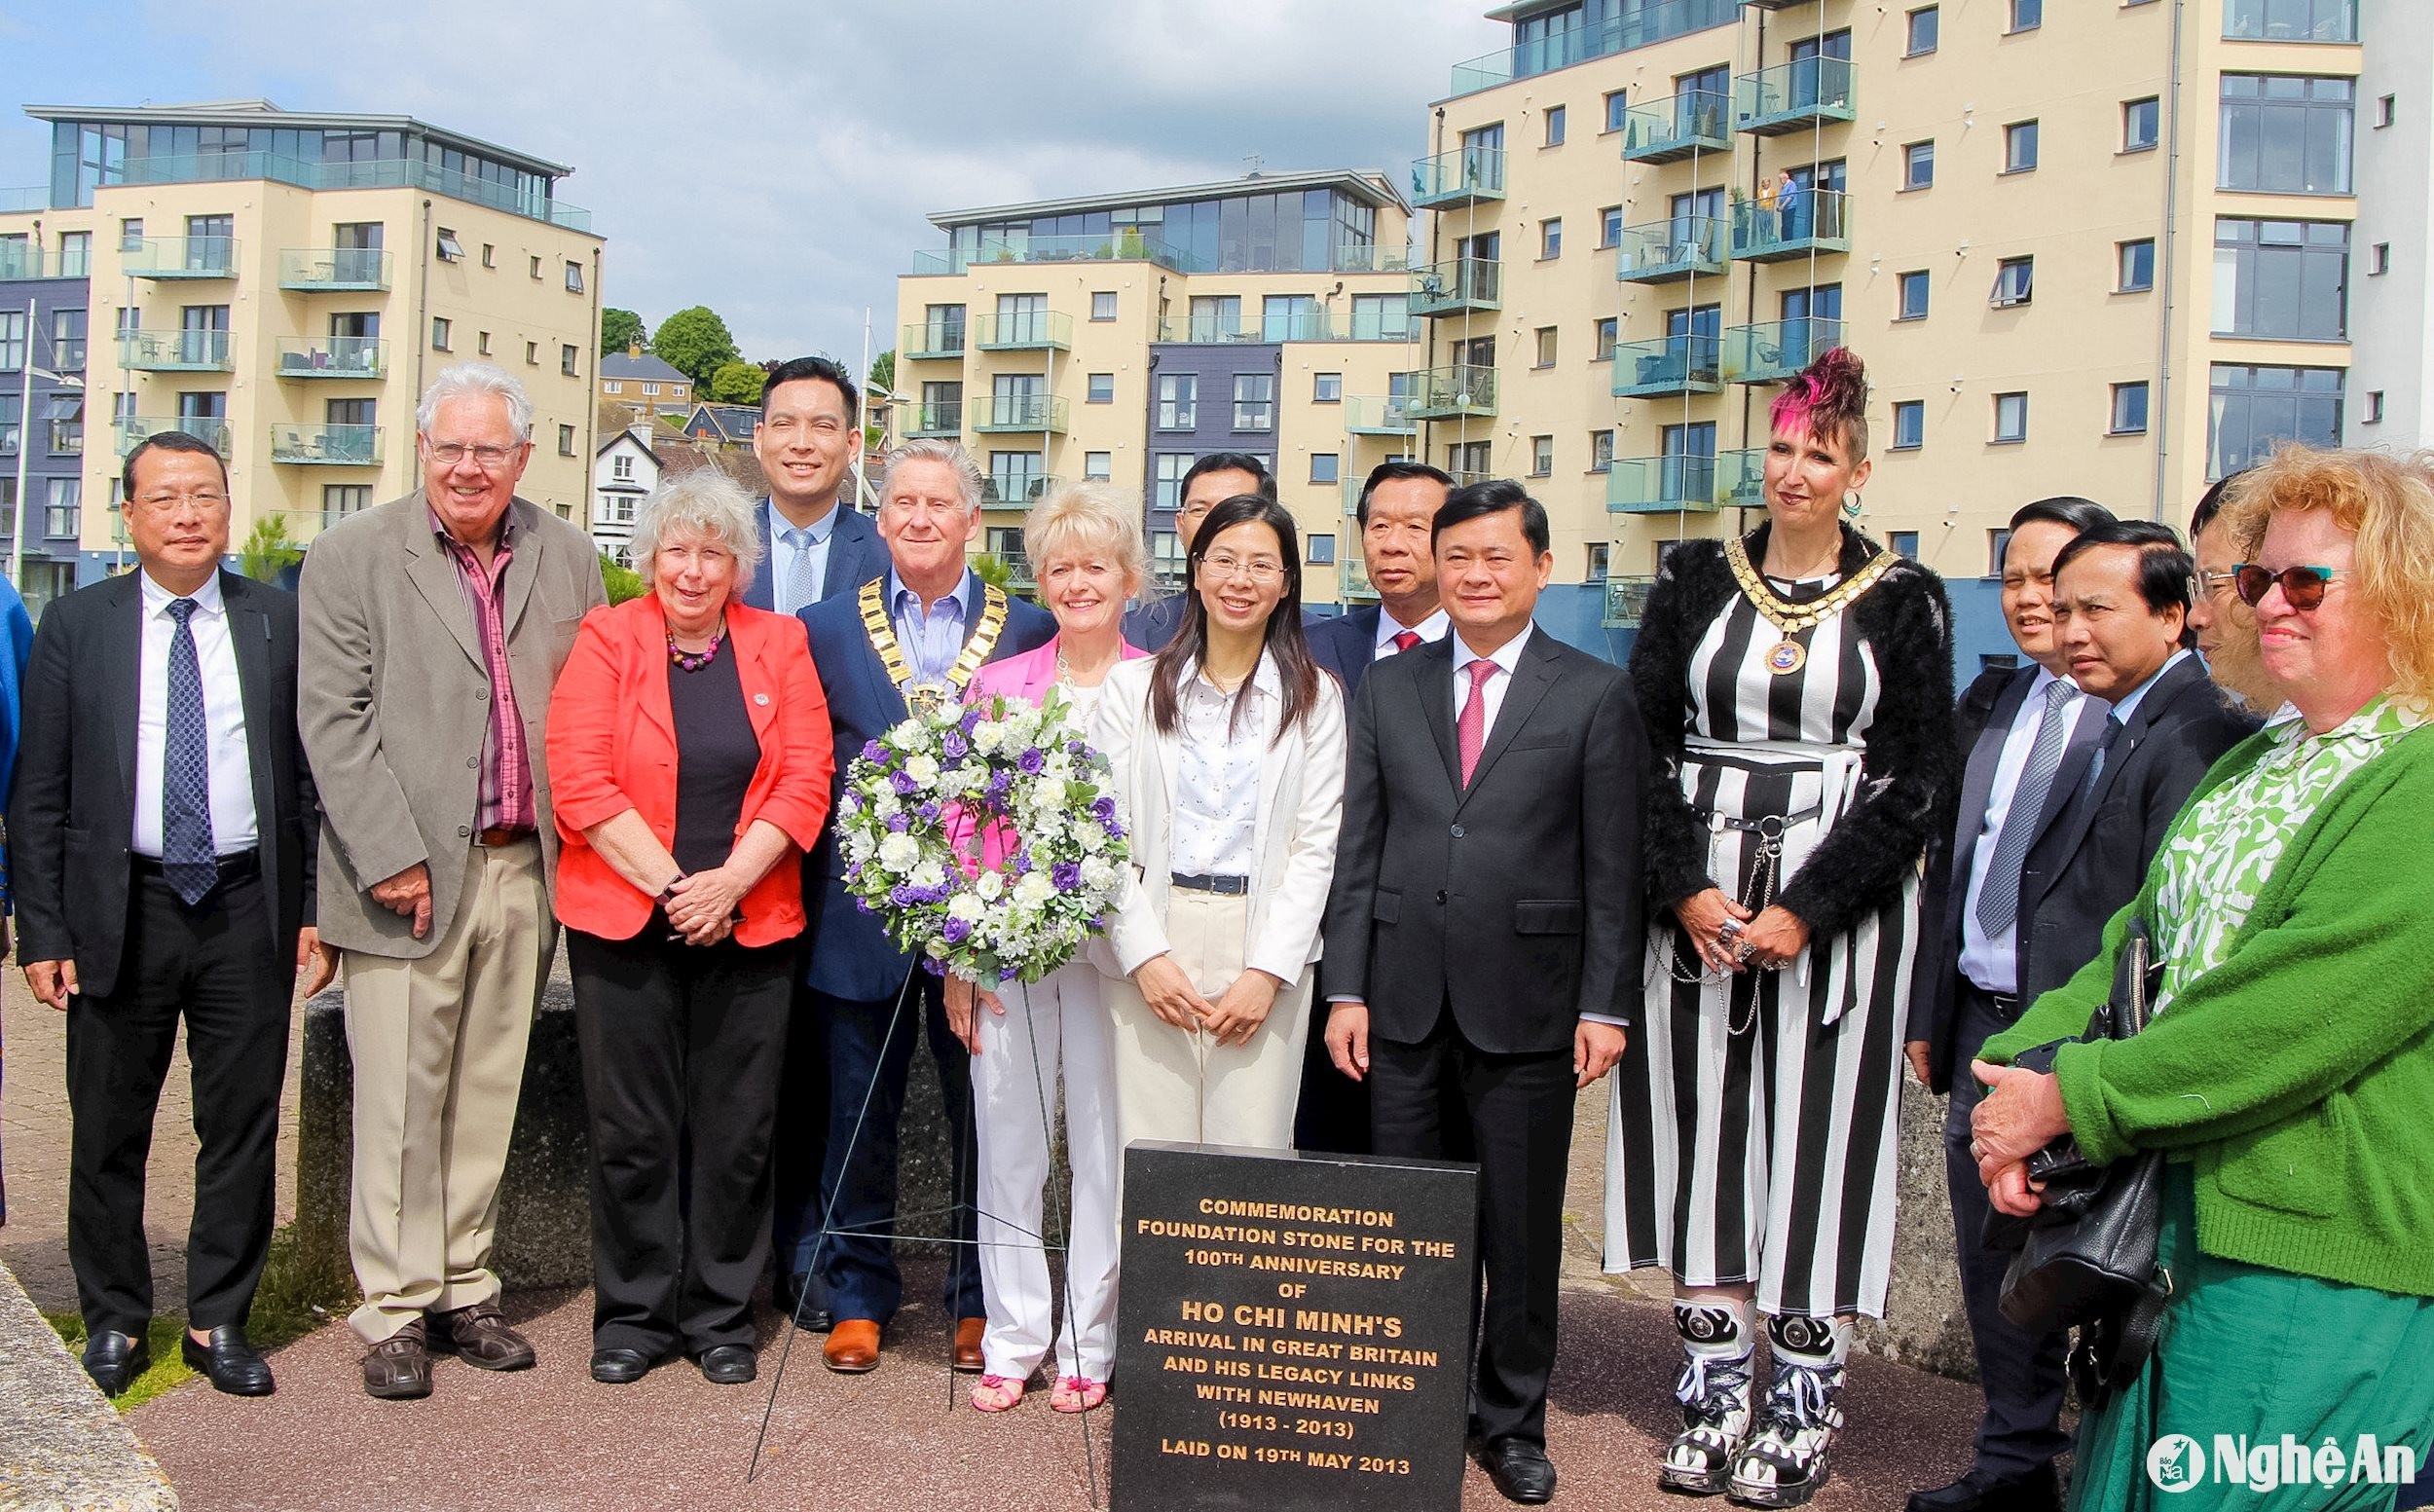 Bí thư Tỉnh ủy Thái Thanh Quý và đoàn đại biểu chụp ảnh lưu niệm tại Bia tưởng niệm Chủ tịch Hồ Chí Minh trên bến cảng thị trấn Newhaven. Ảnh: Quang Đặng